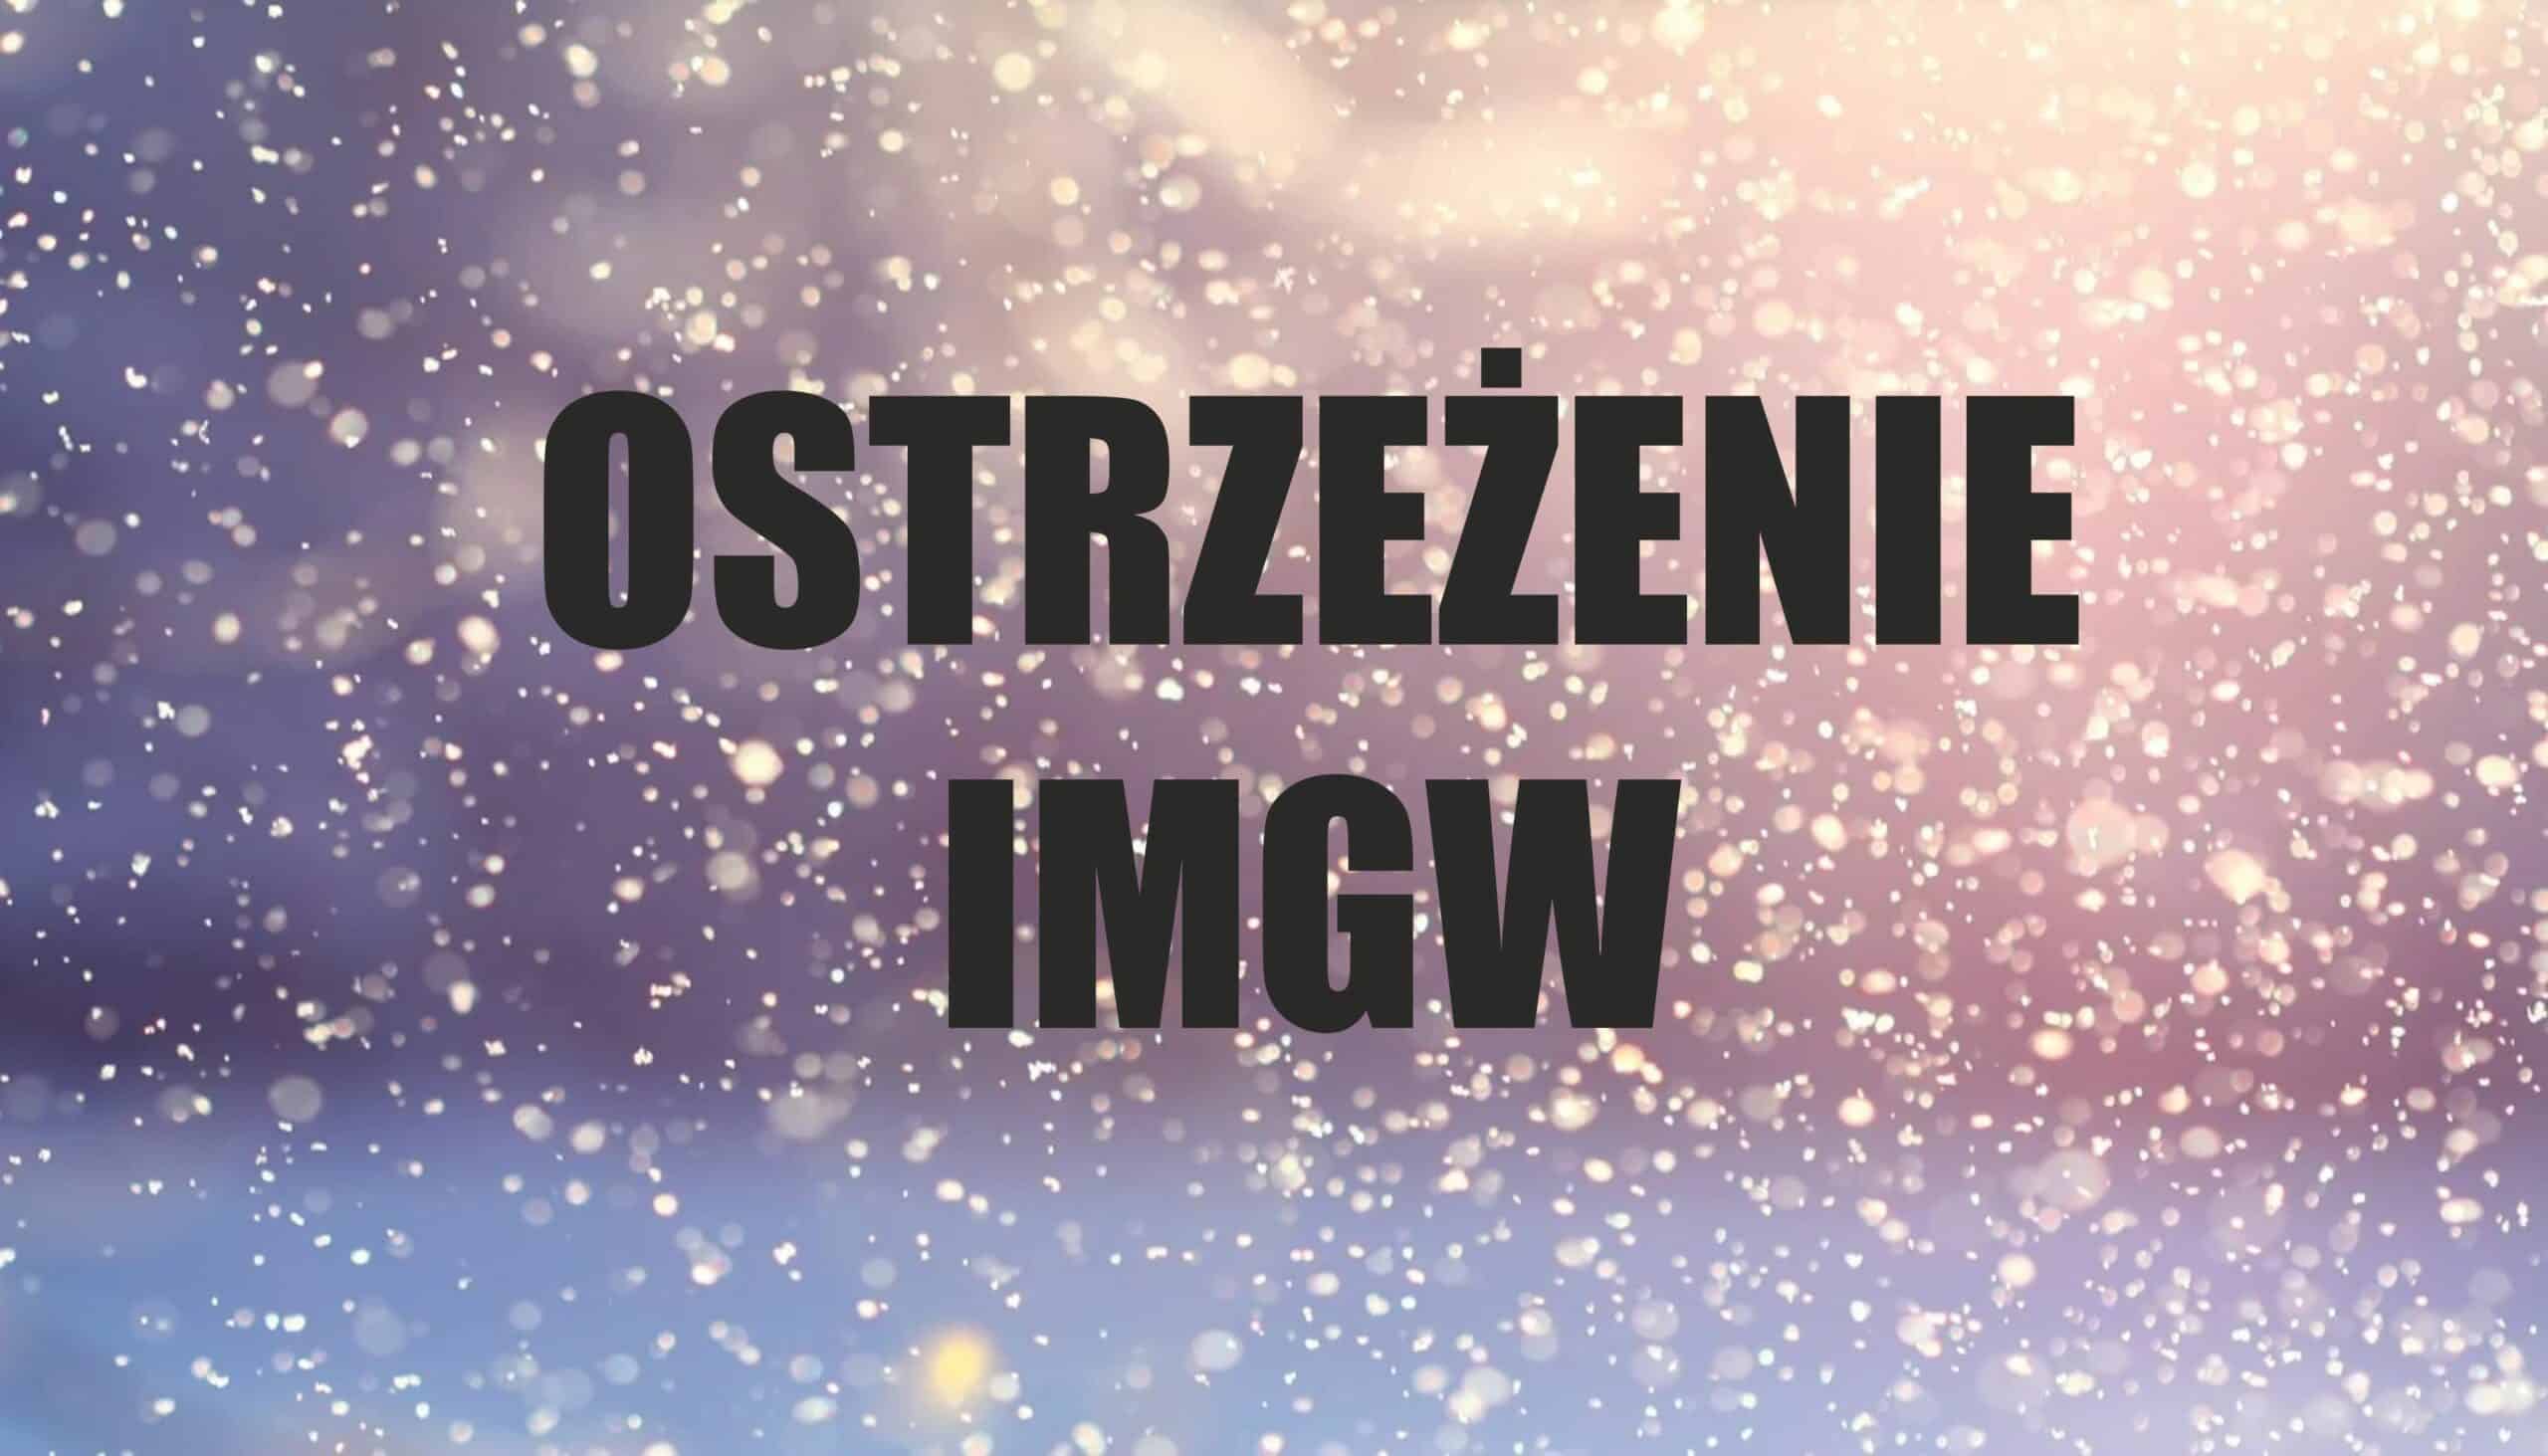 Prognoza pogody: IMGW wydało ostrzeżenie, w marcu czeka nas powrót zimy, w niektórych częściach Polski obfite opady śniegu